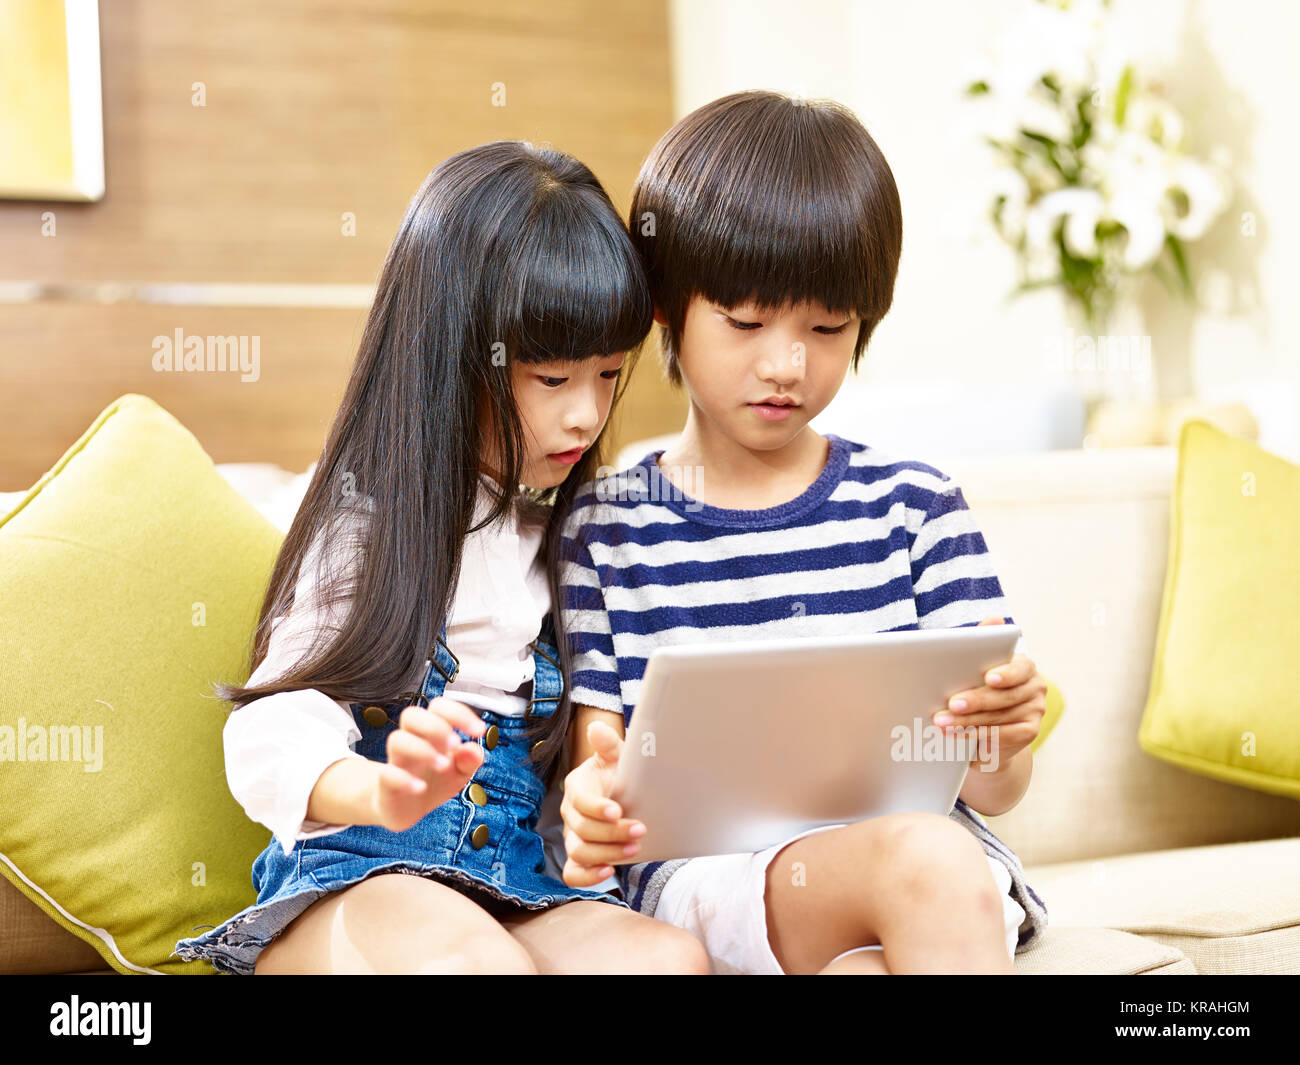 Asian fratello e sorella seduti sul divano guardando a tavoletta digitale insieme. Foto Stock